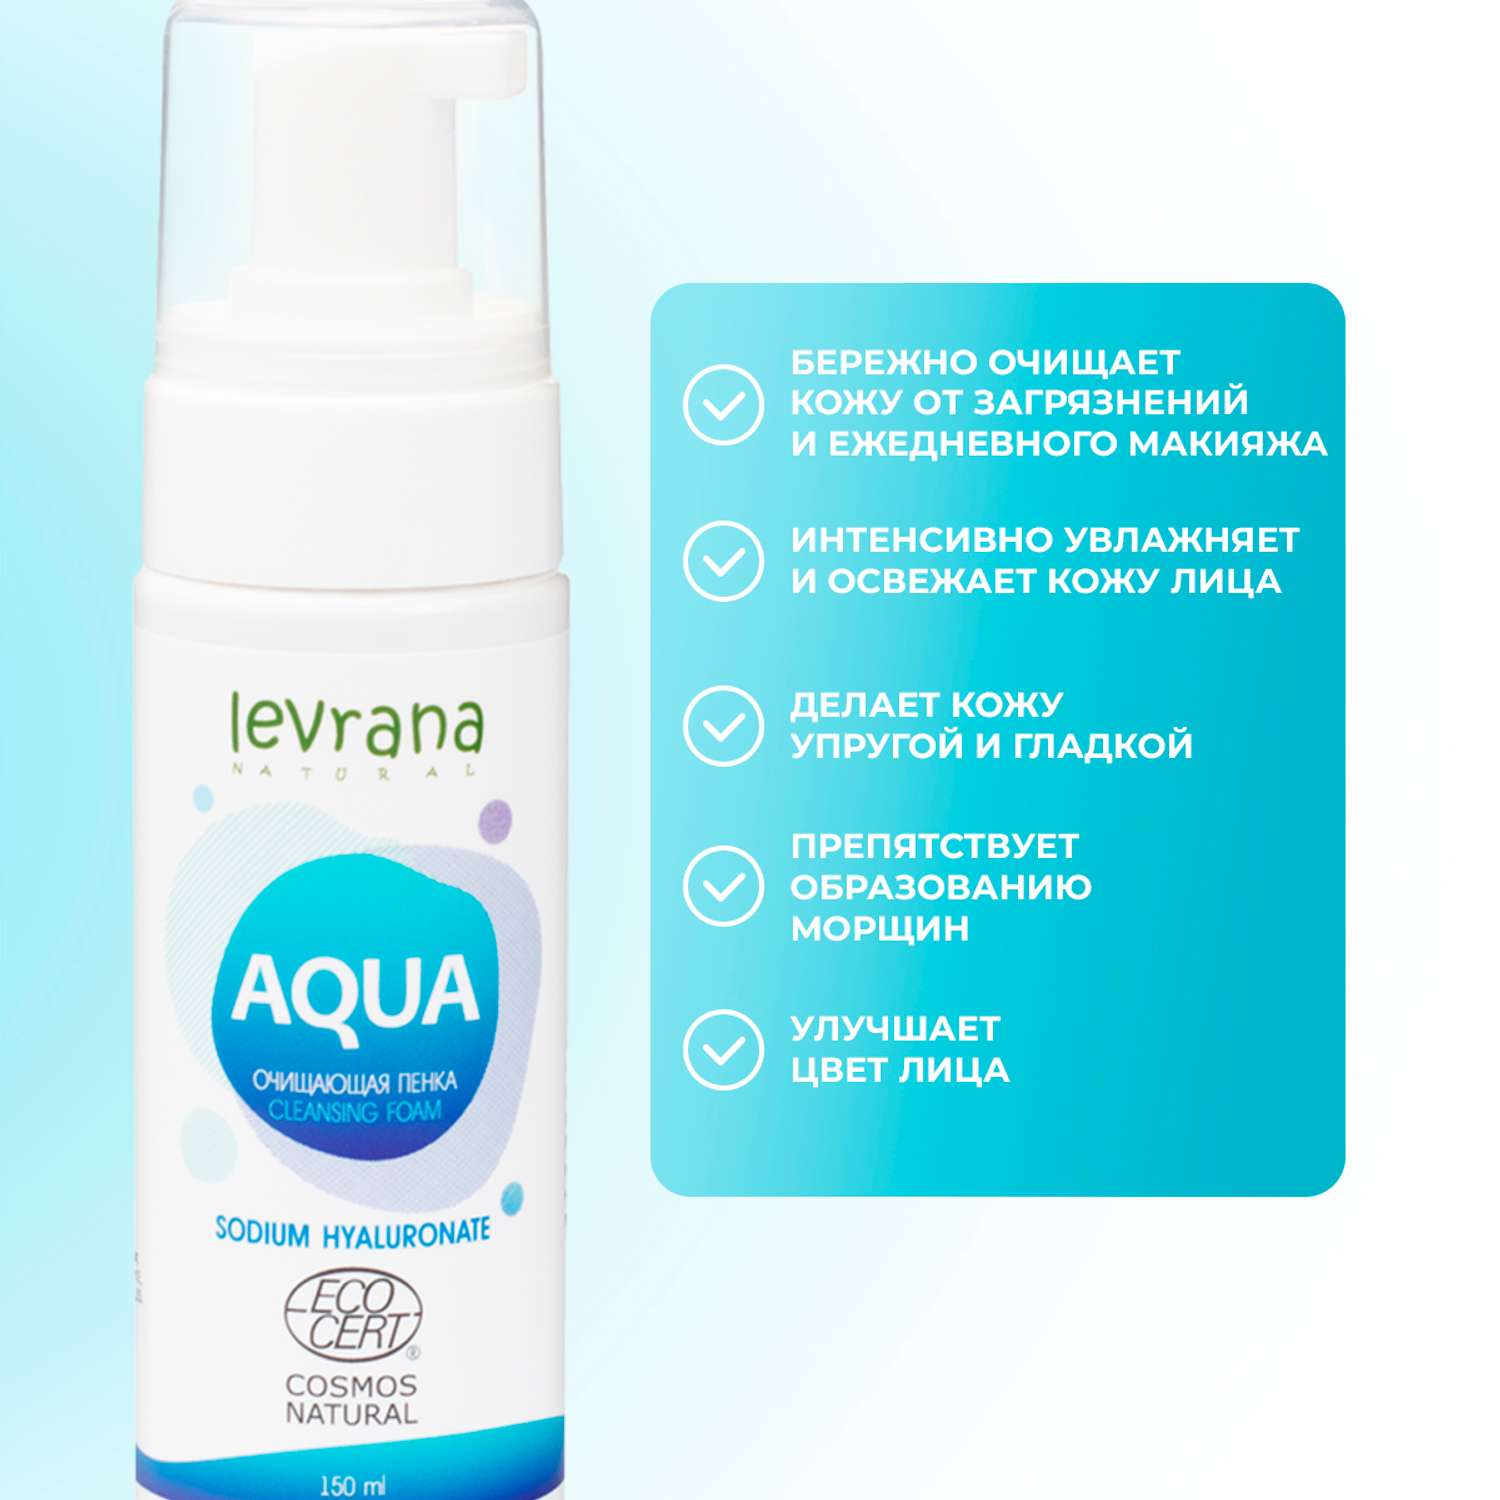 Пенка для умывания Levrana Aqua с гиалуроновой кислотой 150 мл - фото 5